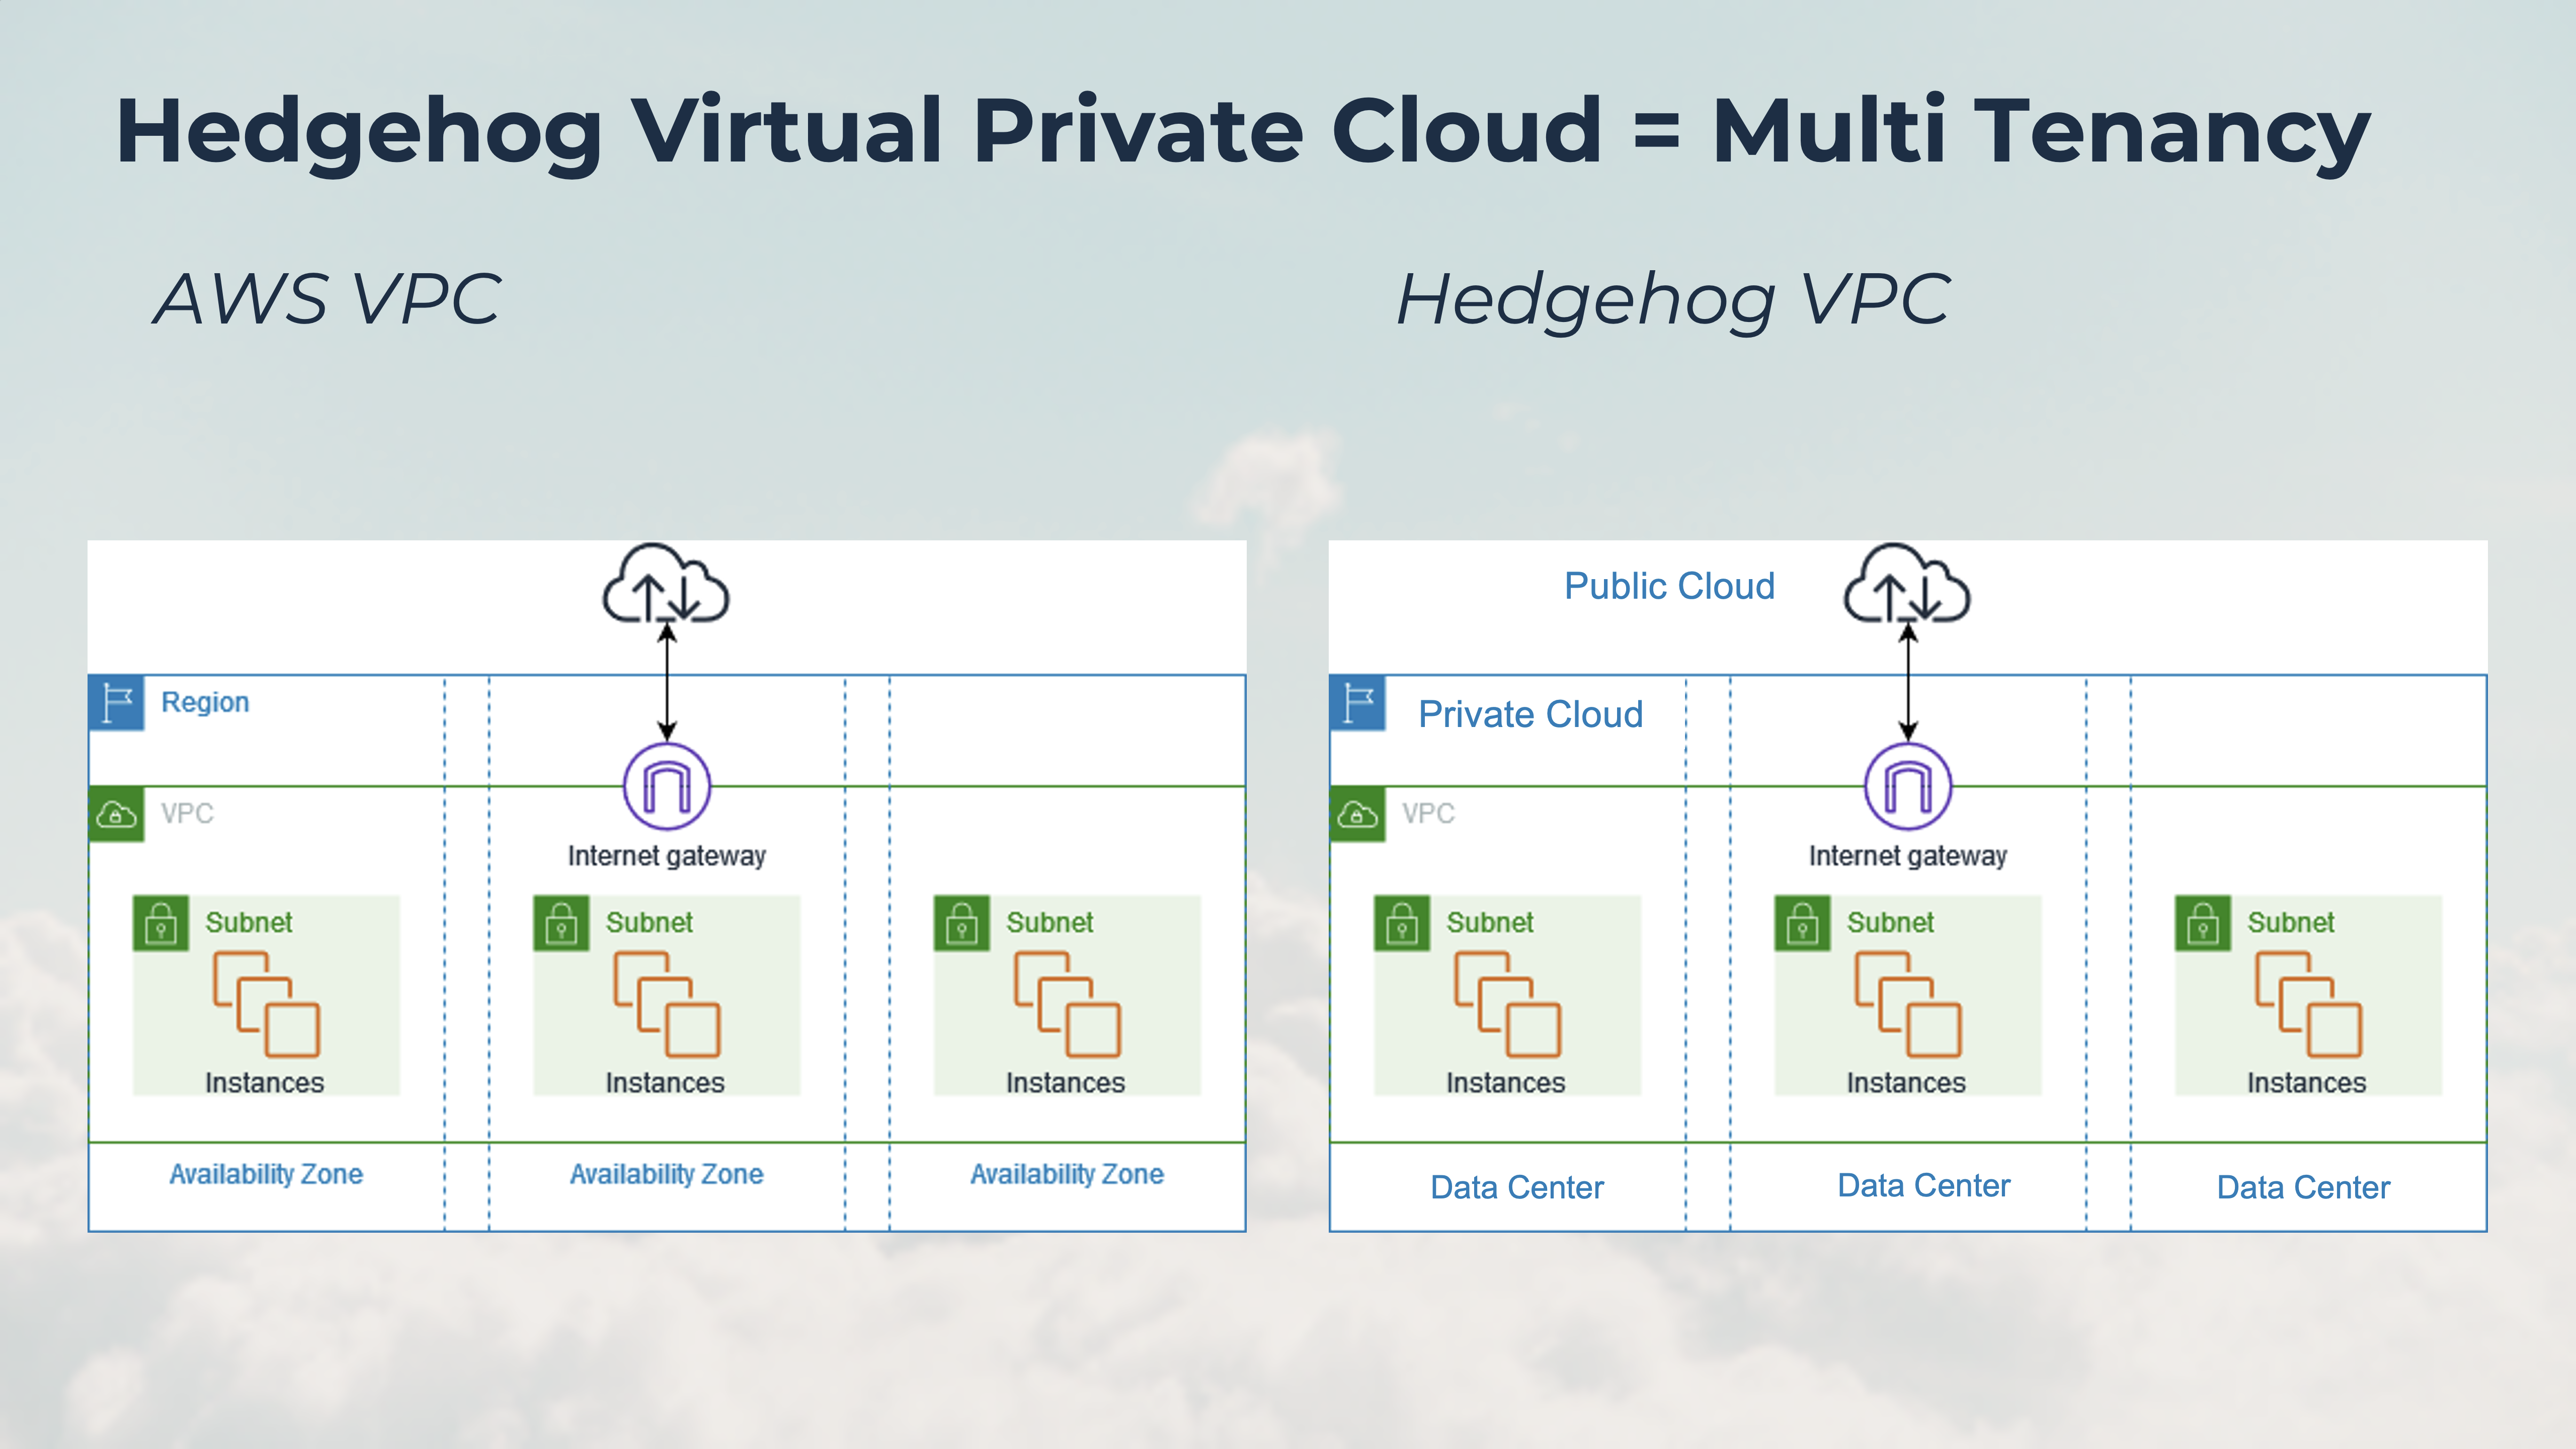 Diagramme du nuage privé virtuel Hedgehog comparé au nuage privé virtuel AWS. Hedgehog VPC est identique à AWS VPC, mais il fonctionne sur un nuage privé où les centres de données sont les mêmes que les zones de disponibilité et la passerelle VPC relie le nuage privé au nuage public.